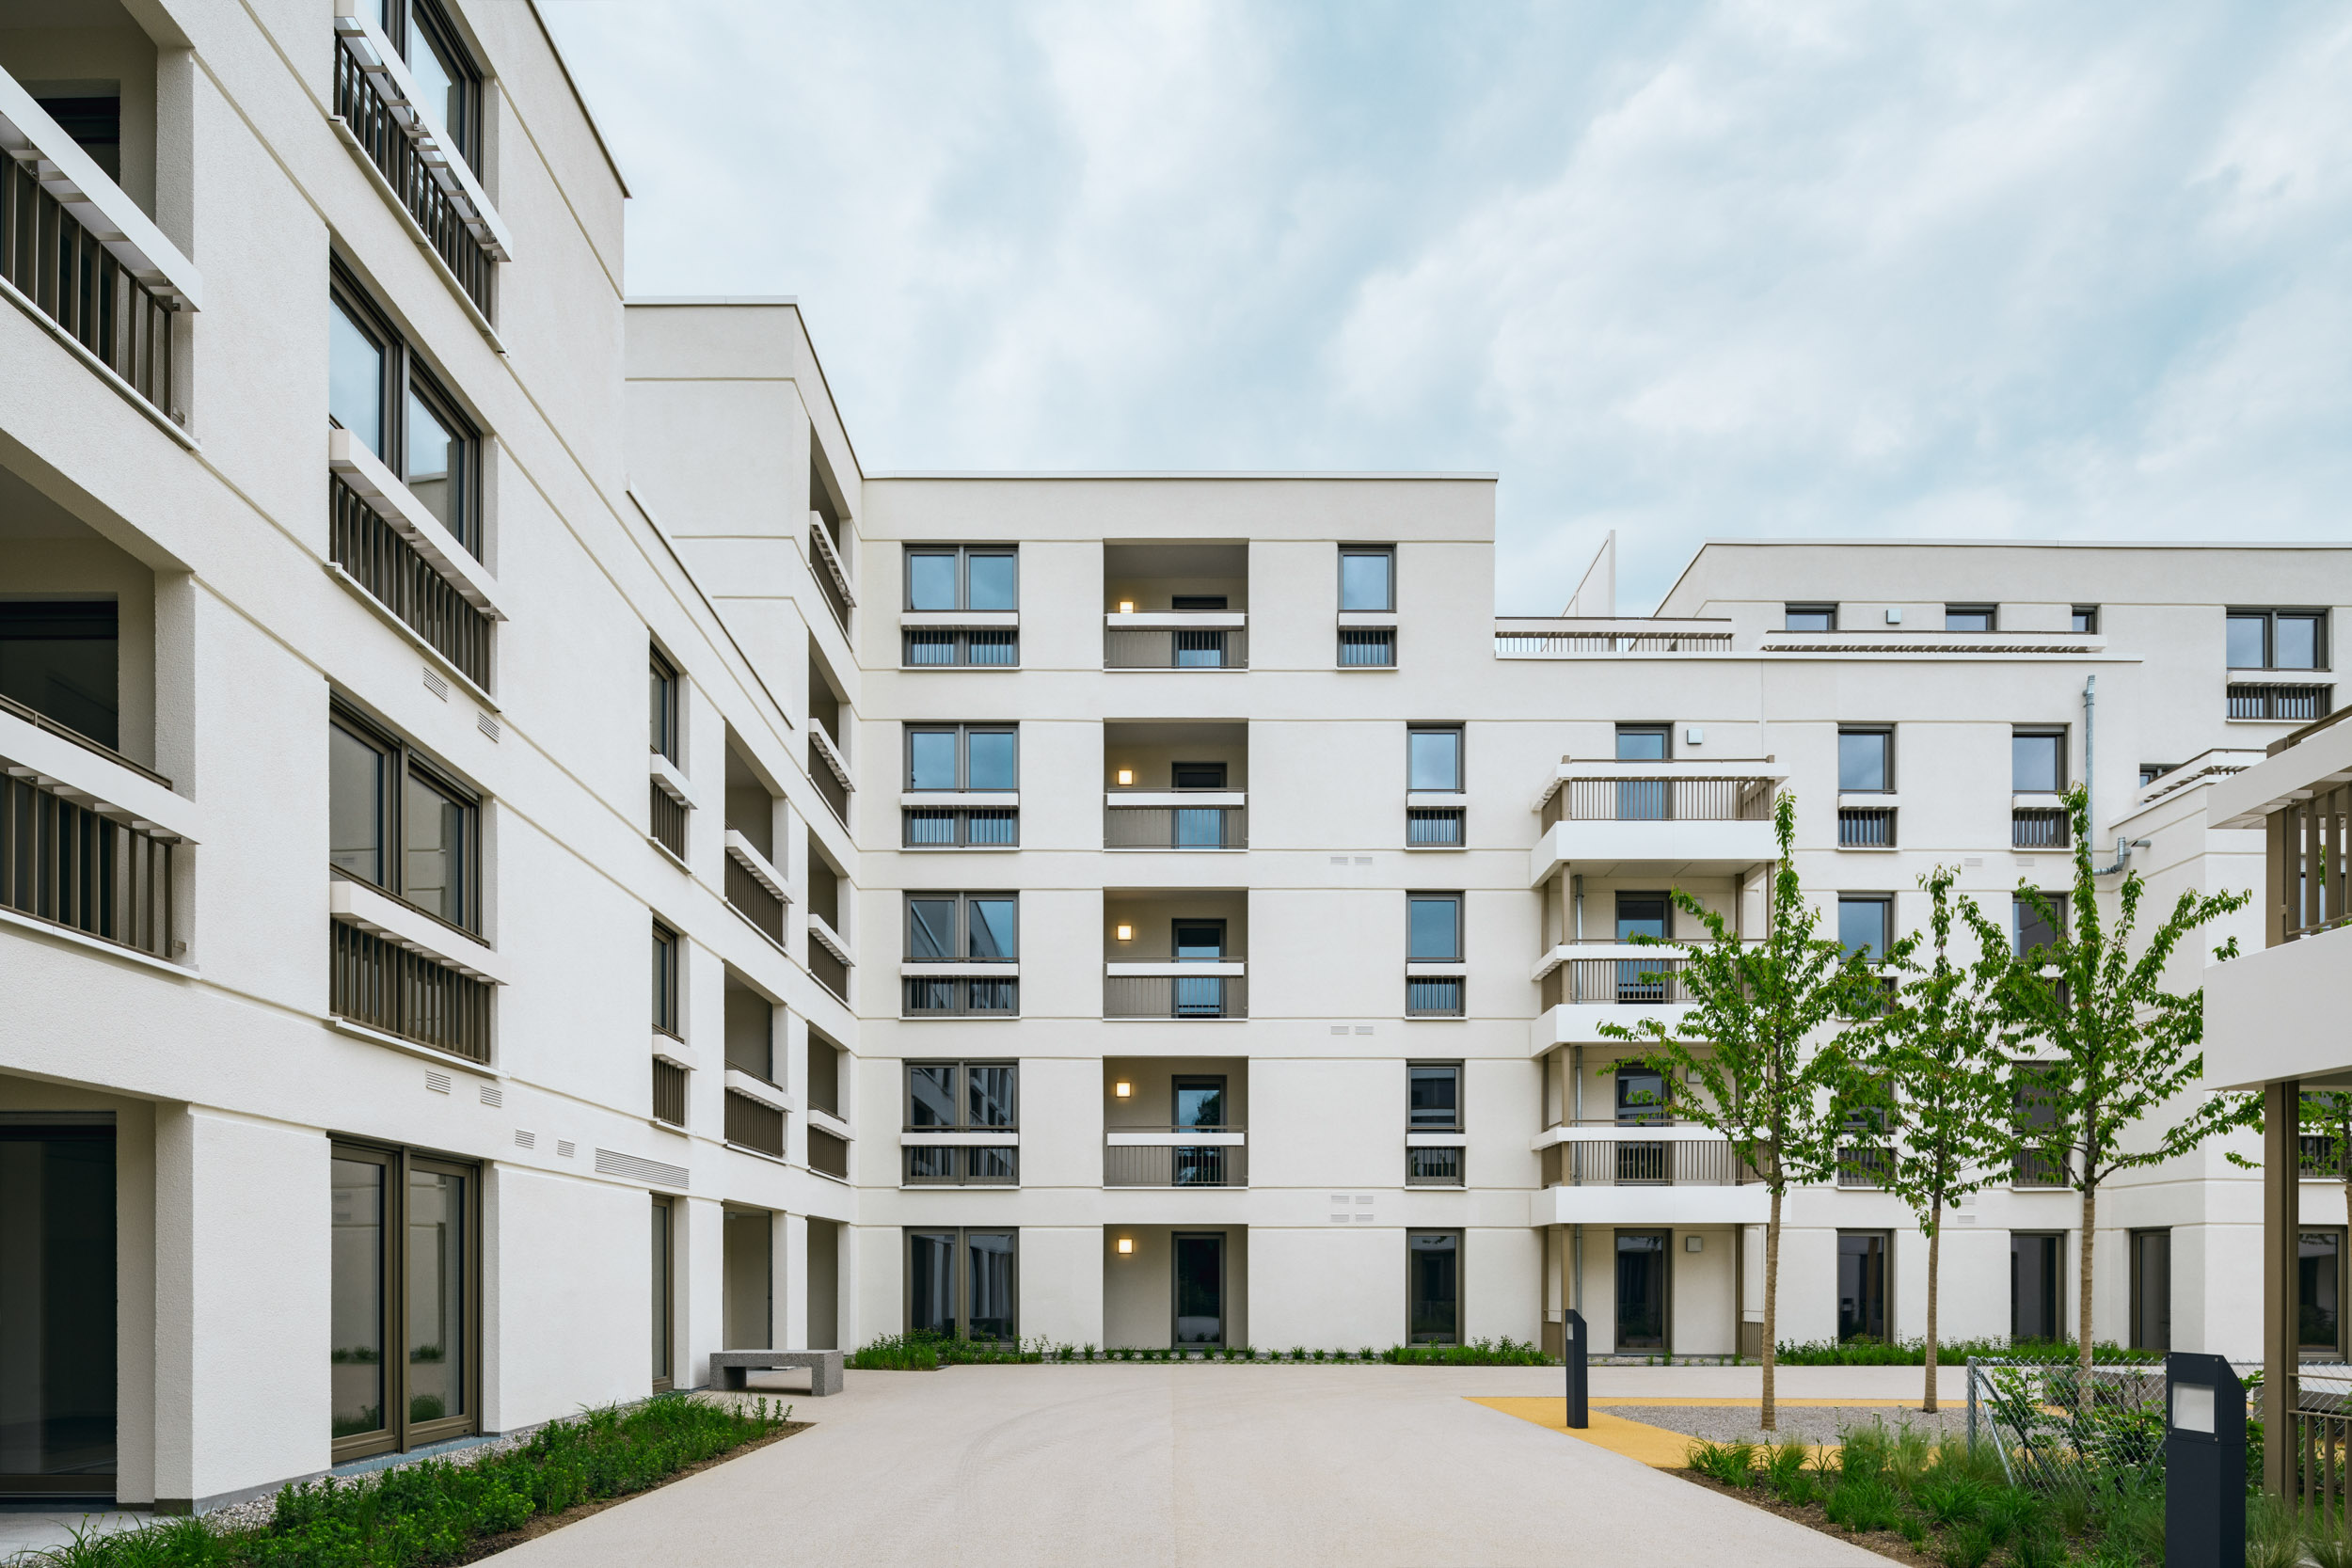 Gustav-Epple-Bauunternehmung-Tru-Living-München-Wohnbau-2020-TruLiving_MLX6810#00